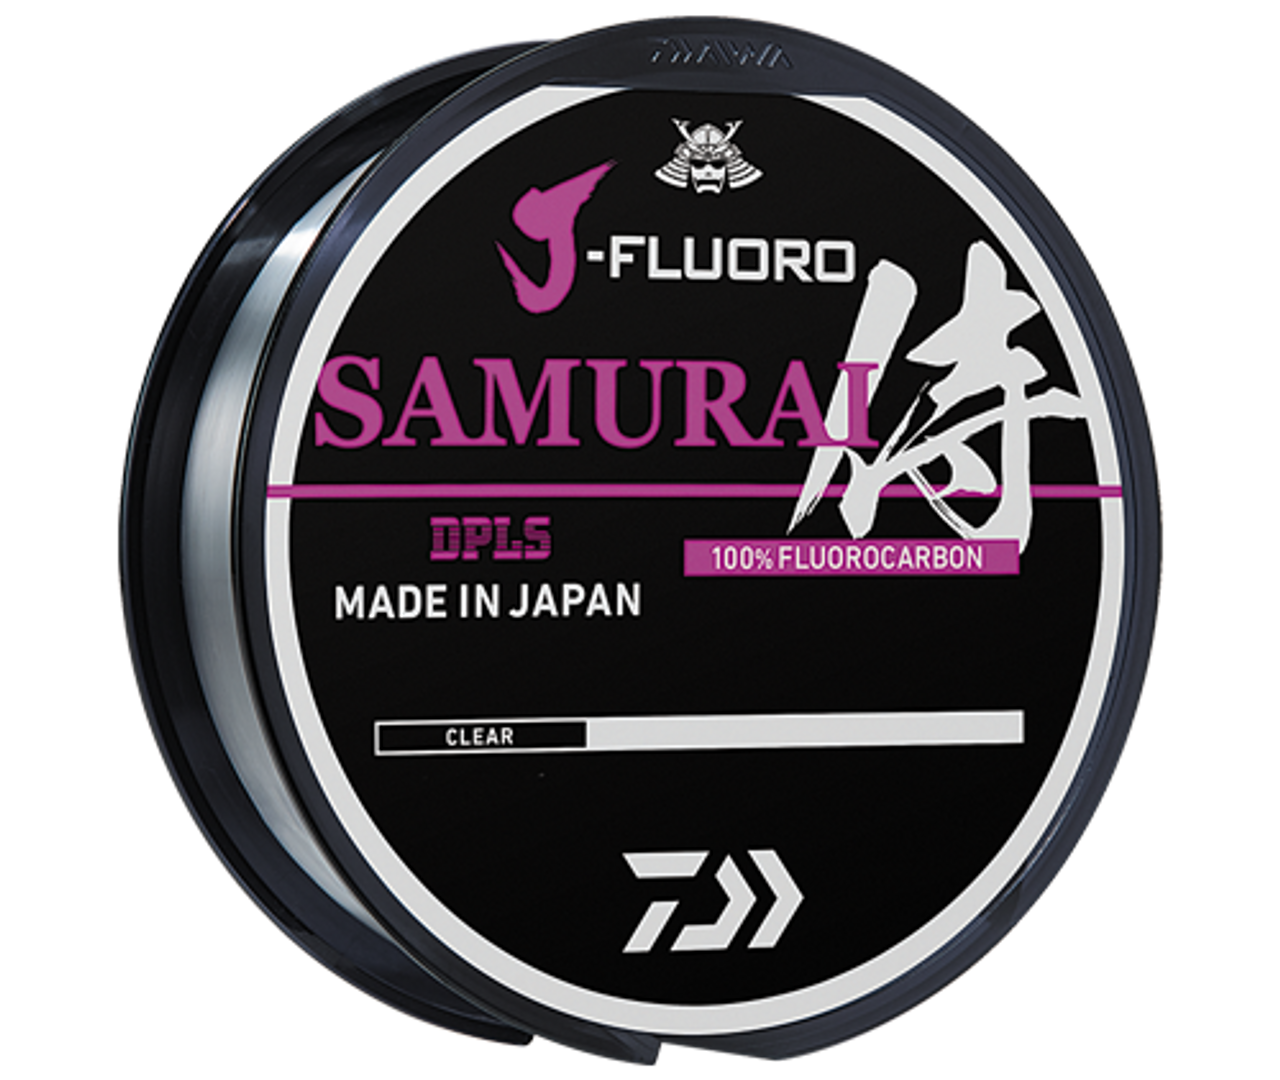 Daiwa J-Fluoro Samurai